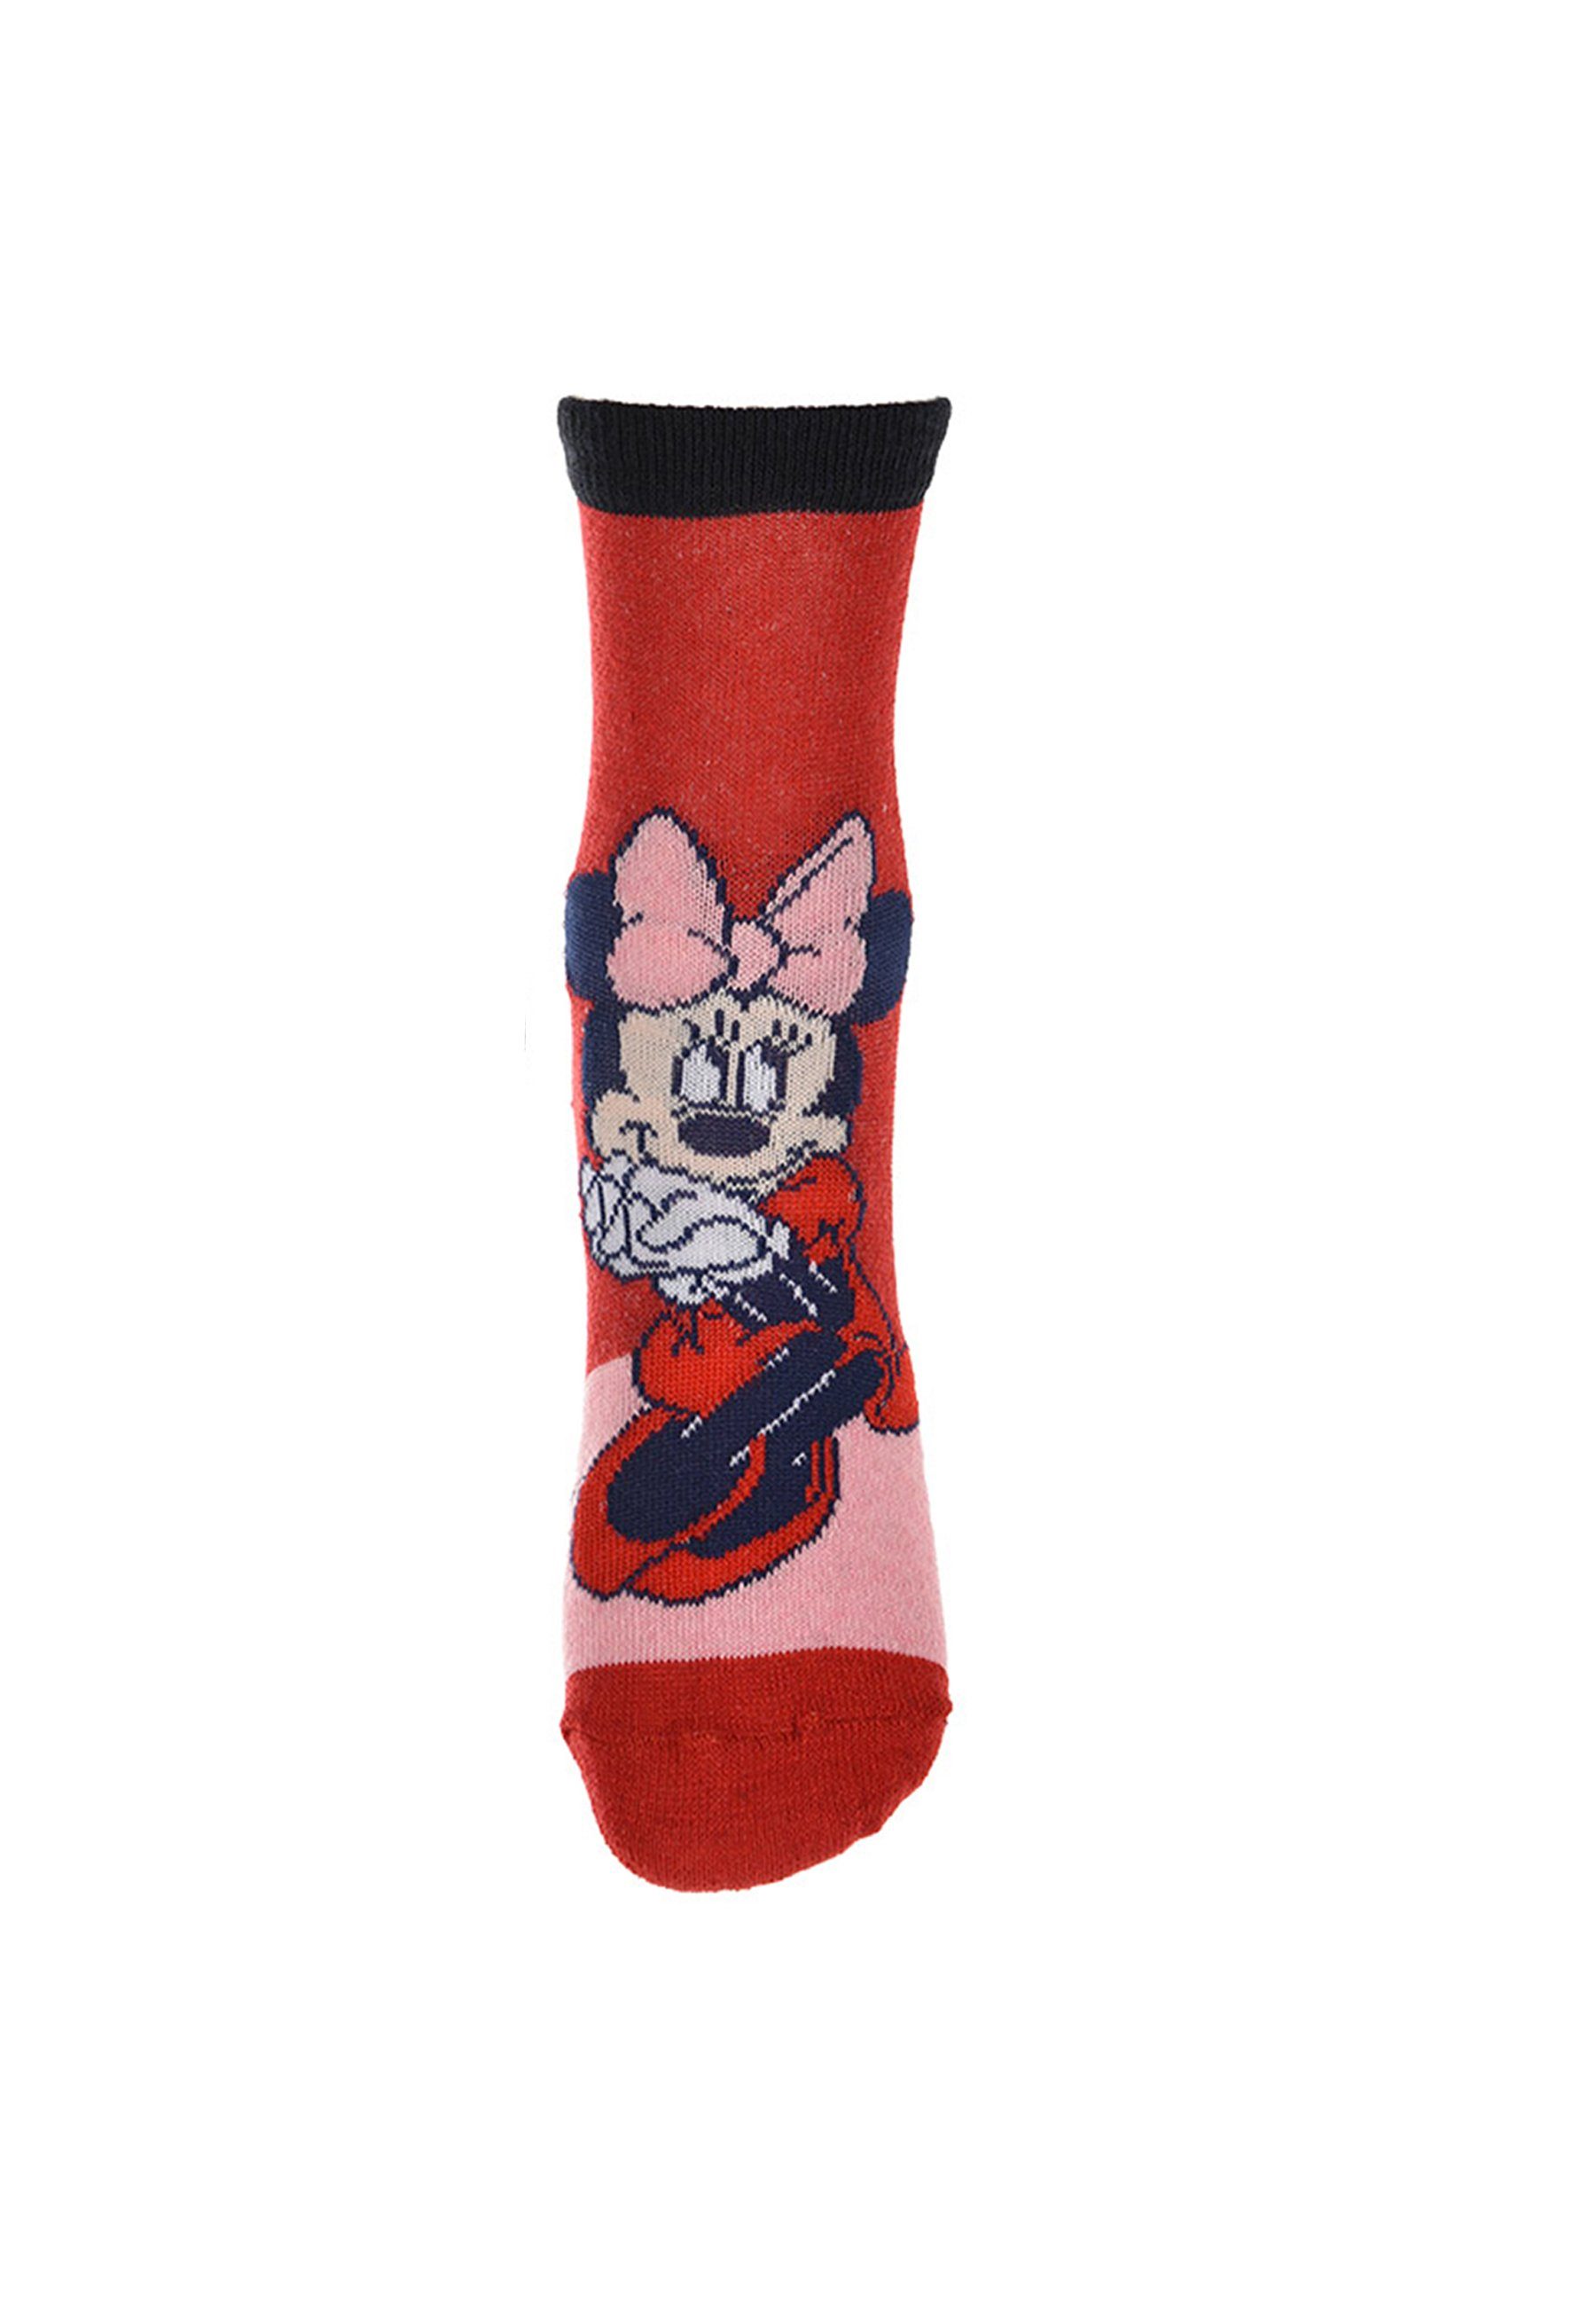 Mädchen Disney Strümpfe Socken Mouse Minnie Kinder Socken Minnie